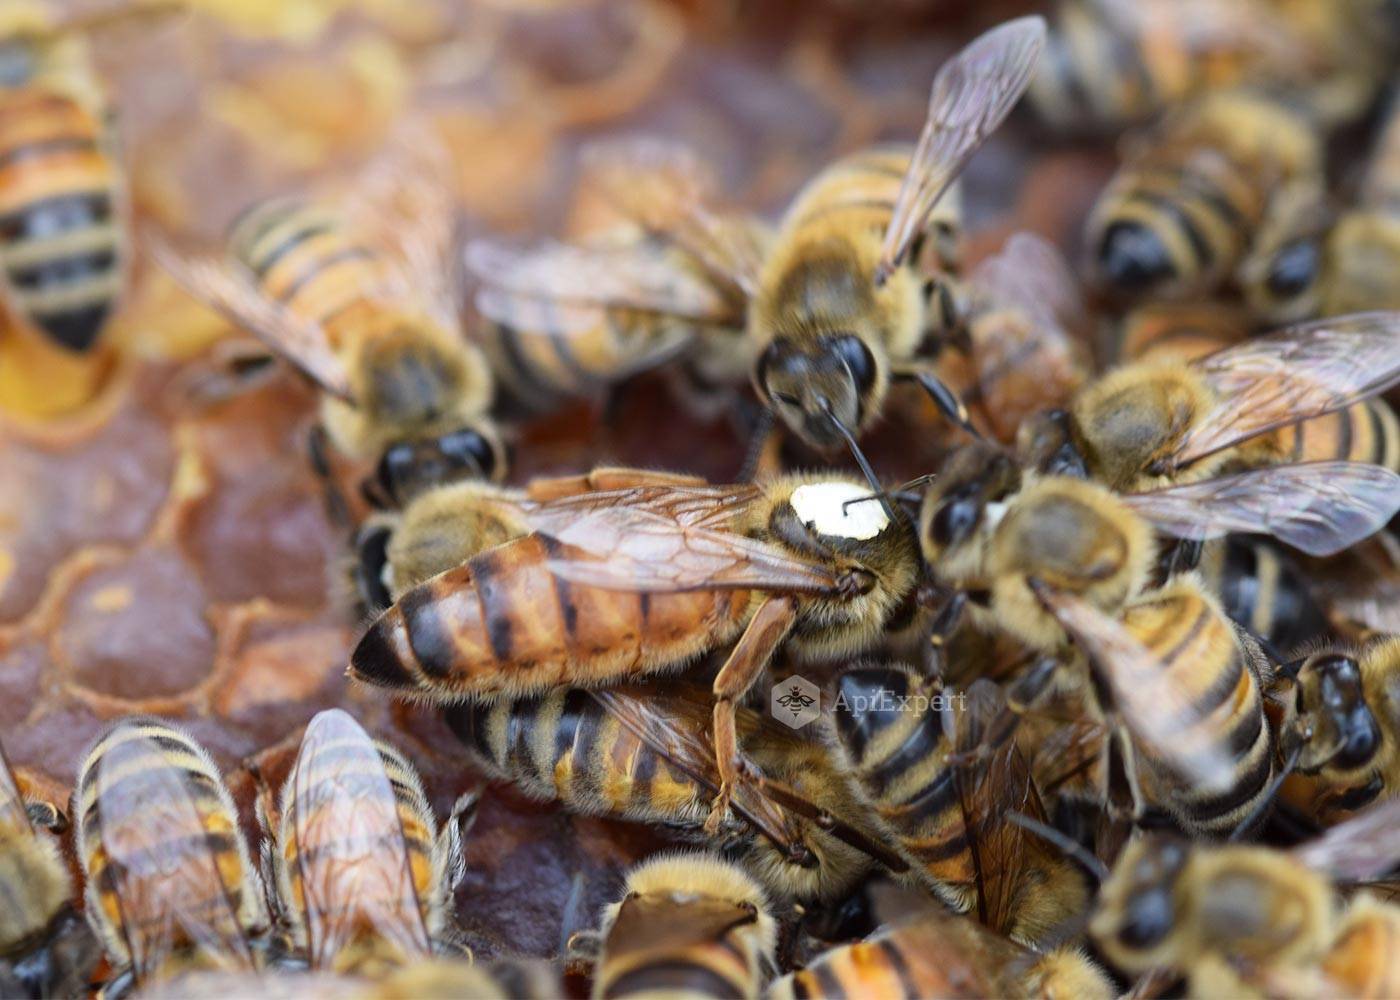 Карпатские пчелы — характеристика, возможности для разведения в средней полосе. | cельхозпортал